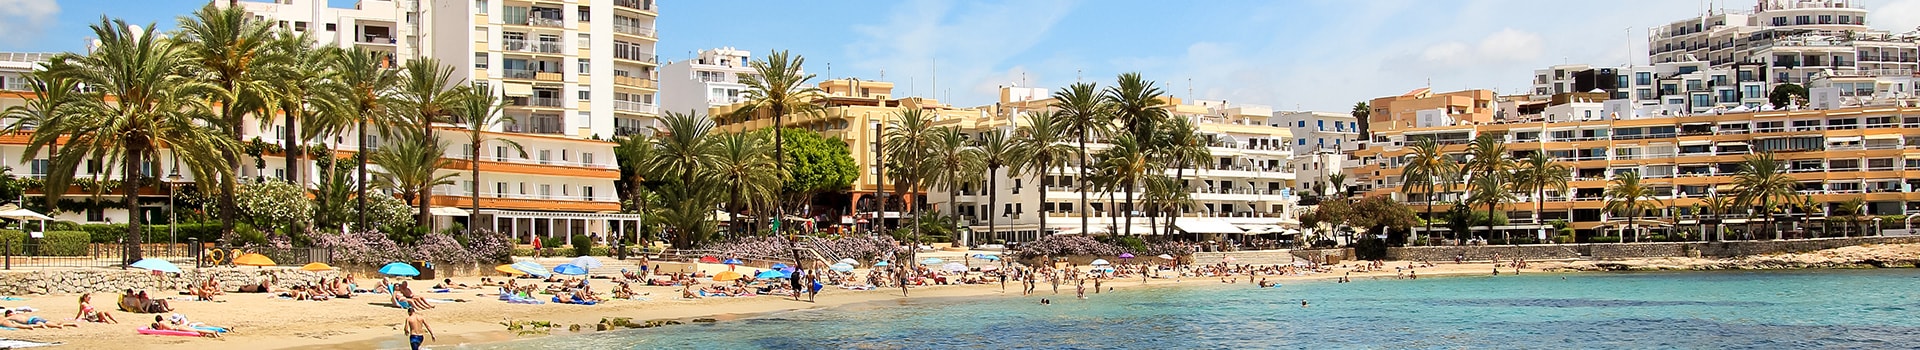 Biglietti da Nave da Formentera a Ibiza